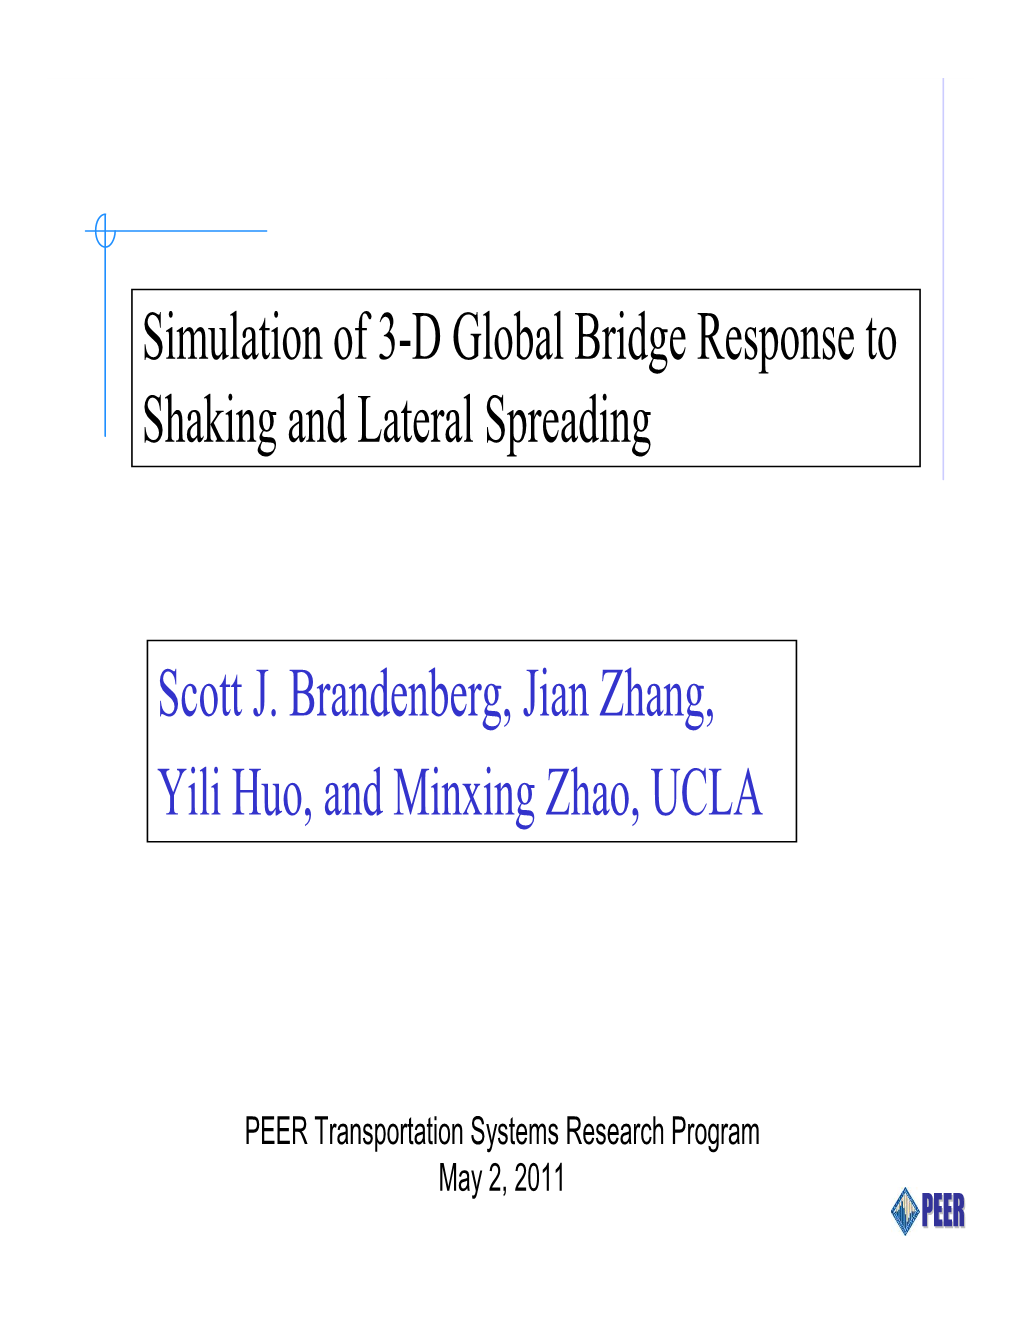 Scott J. Brandenberg, Jian Zhang, Yili Huo, and Minxing Zhao, UCLA